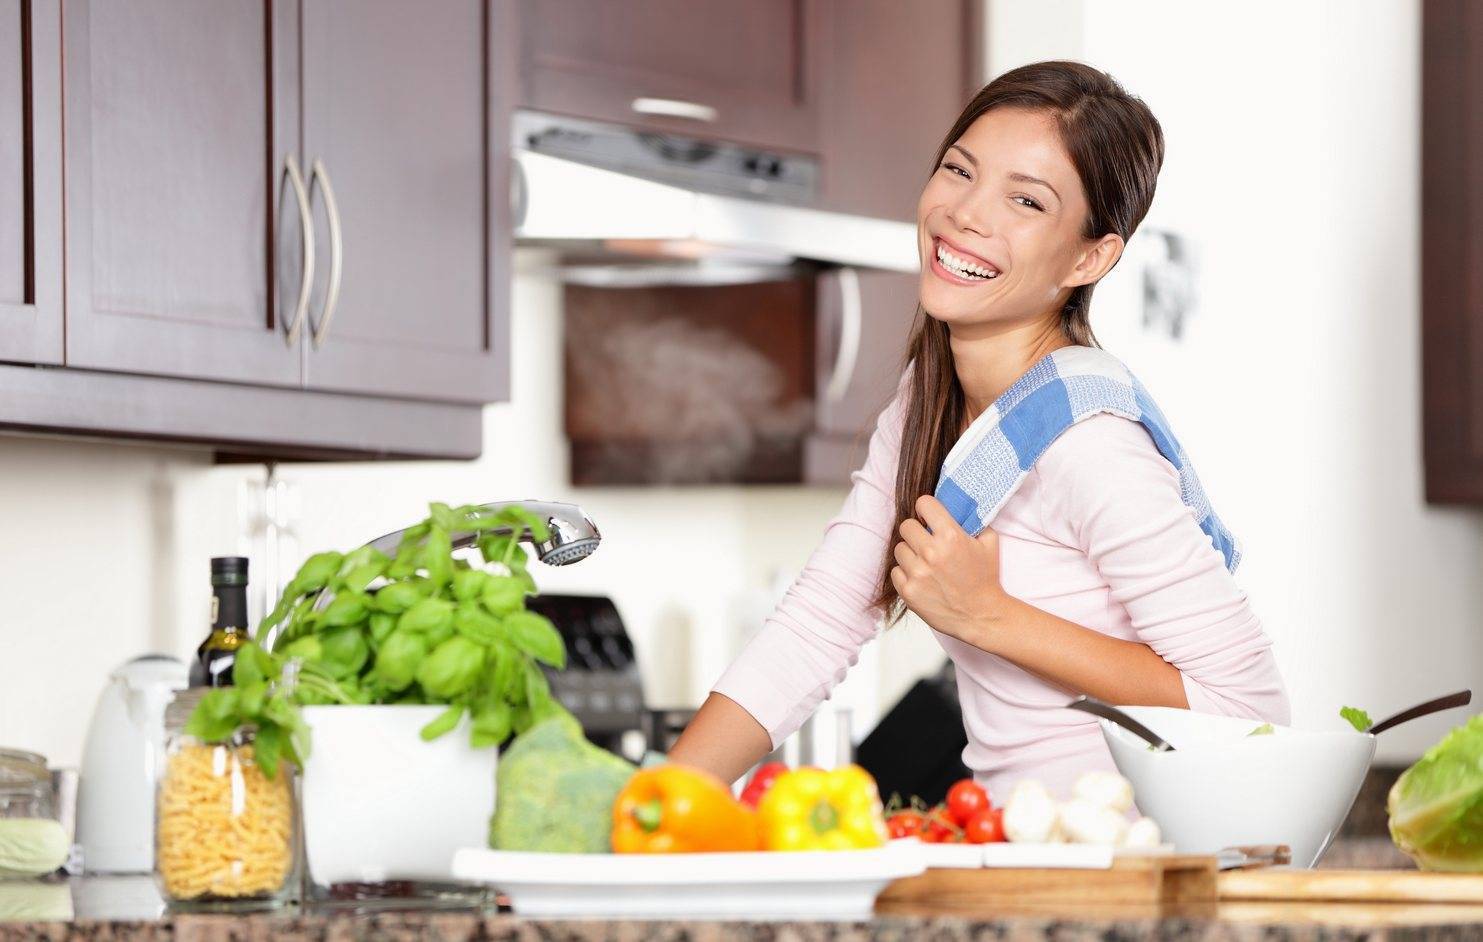 Тайм-менеджмент на кухне: советы, которые облегчат вашу готовку и жизнь – разные советы